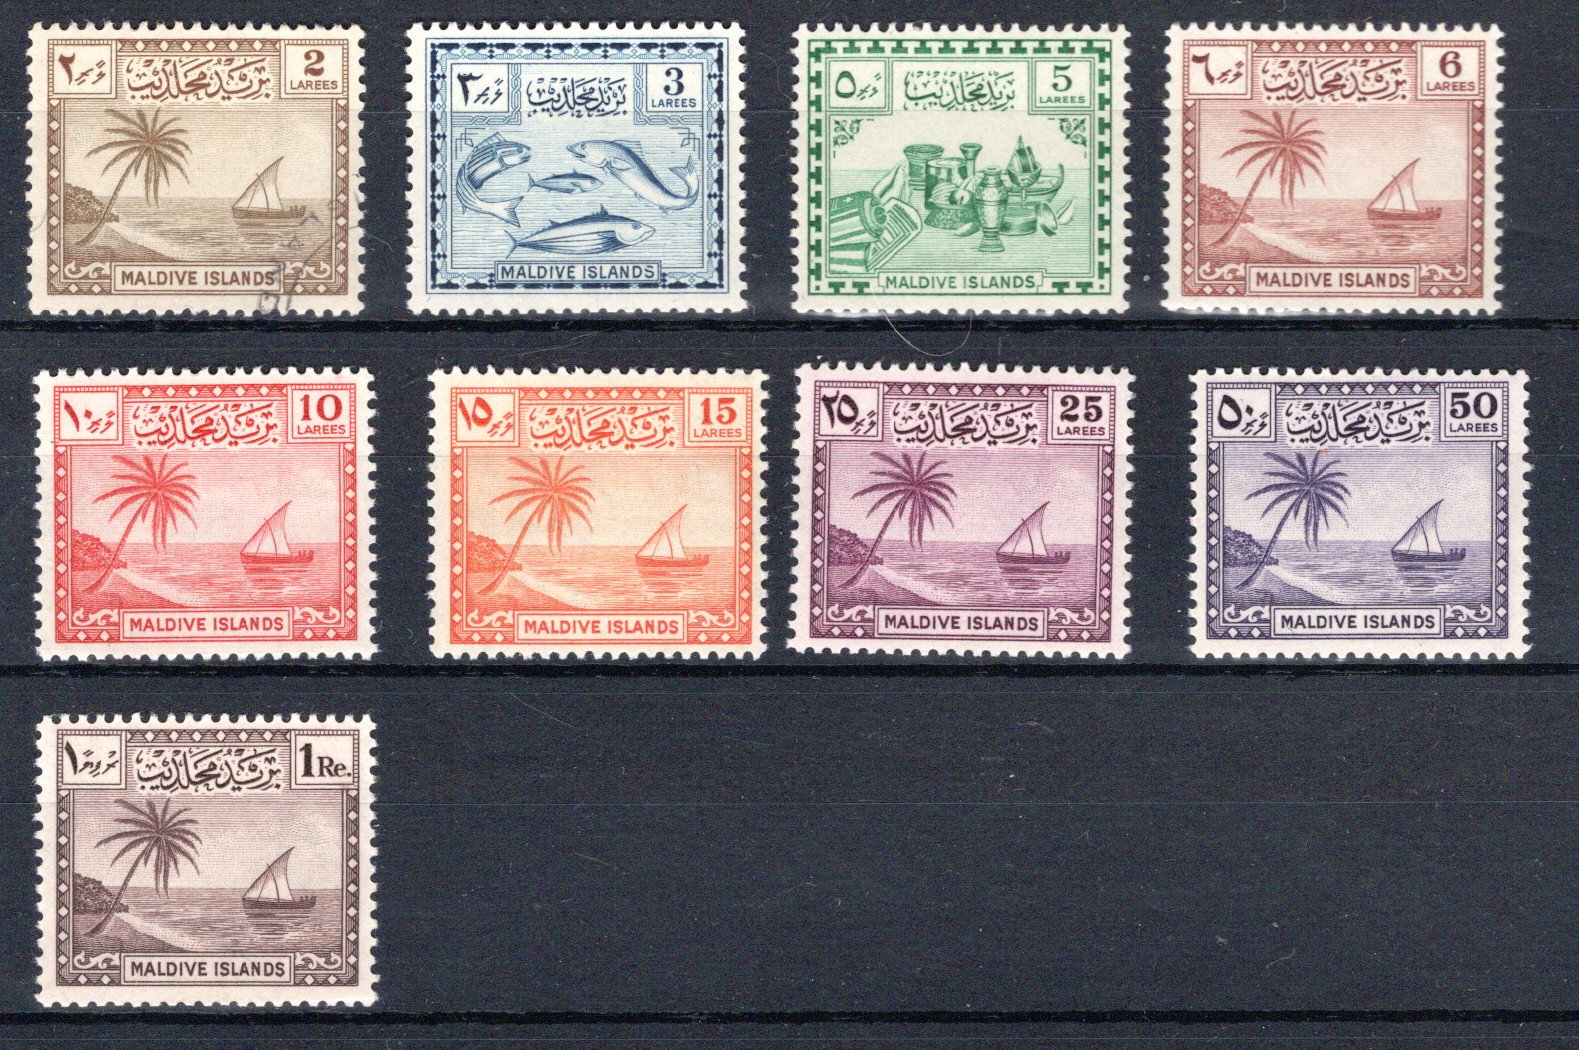 Lot 278 - British Commonwealth maldive islands -  Georg Bühler Briefmarken Auktionen GmbH Georg Bühler 336 auction